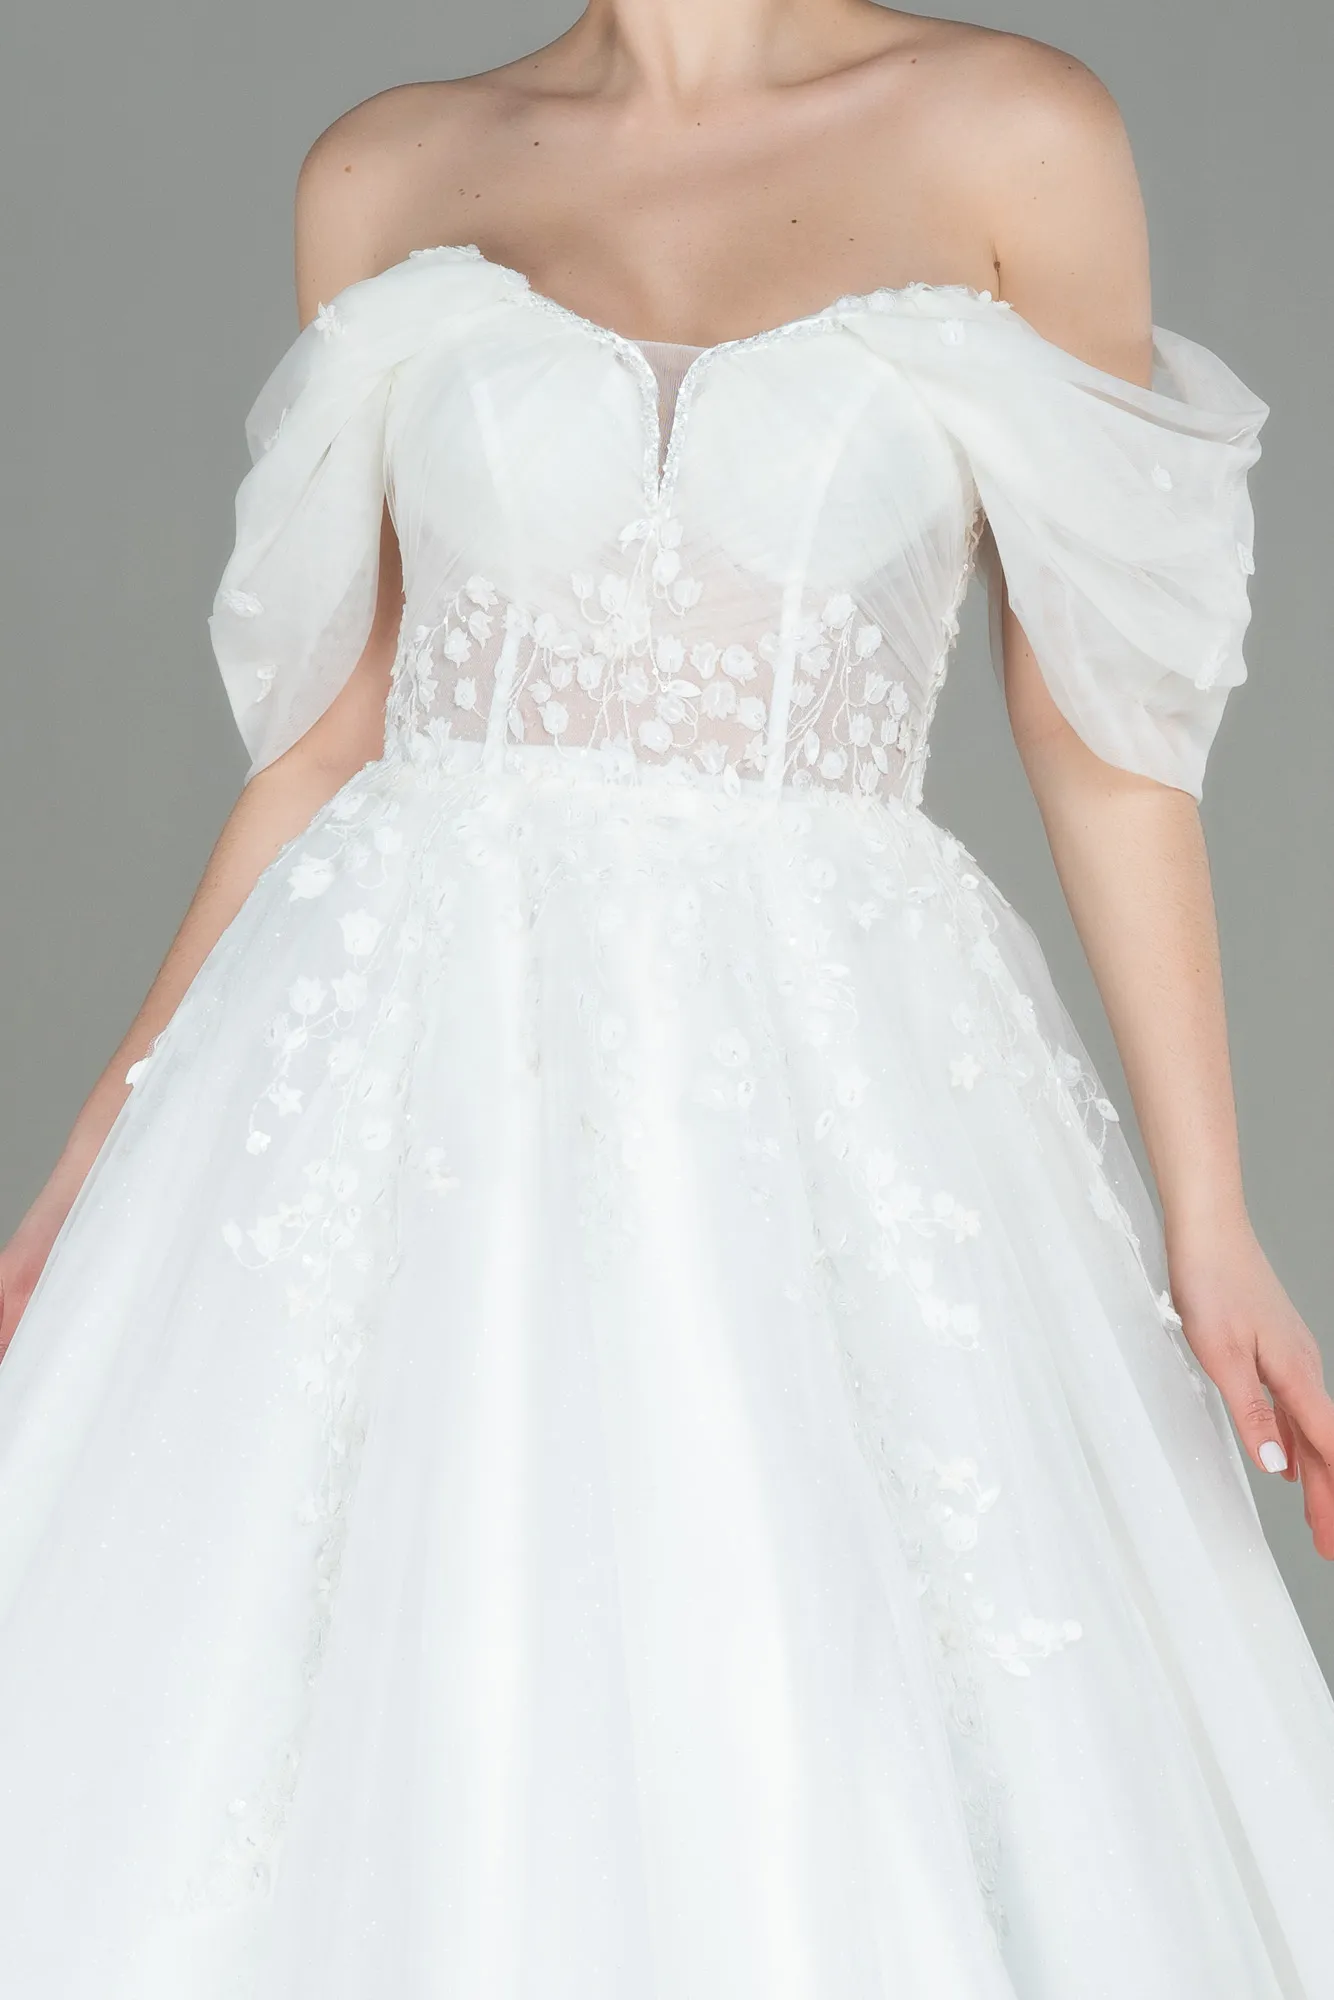 Ecru-Wedding Dress ABG008